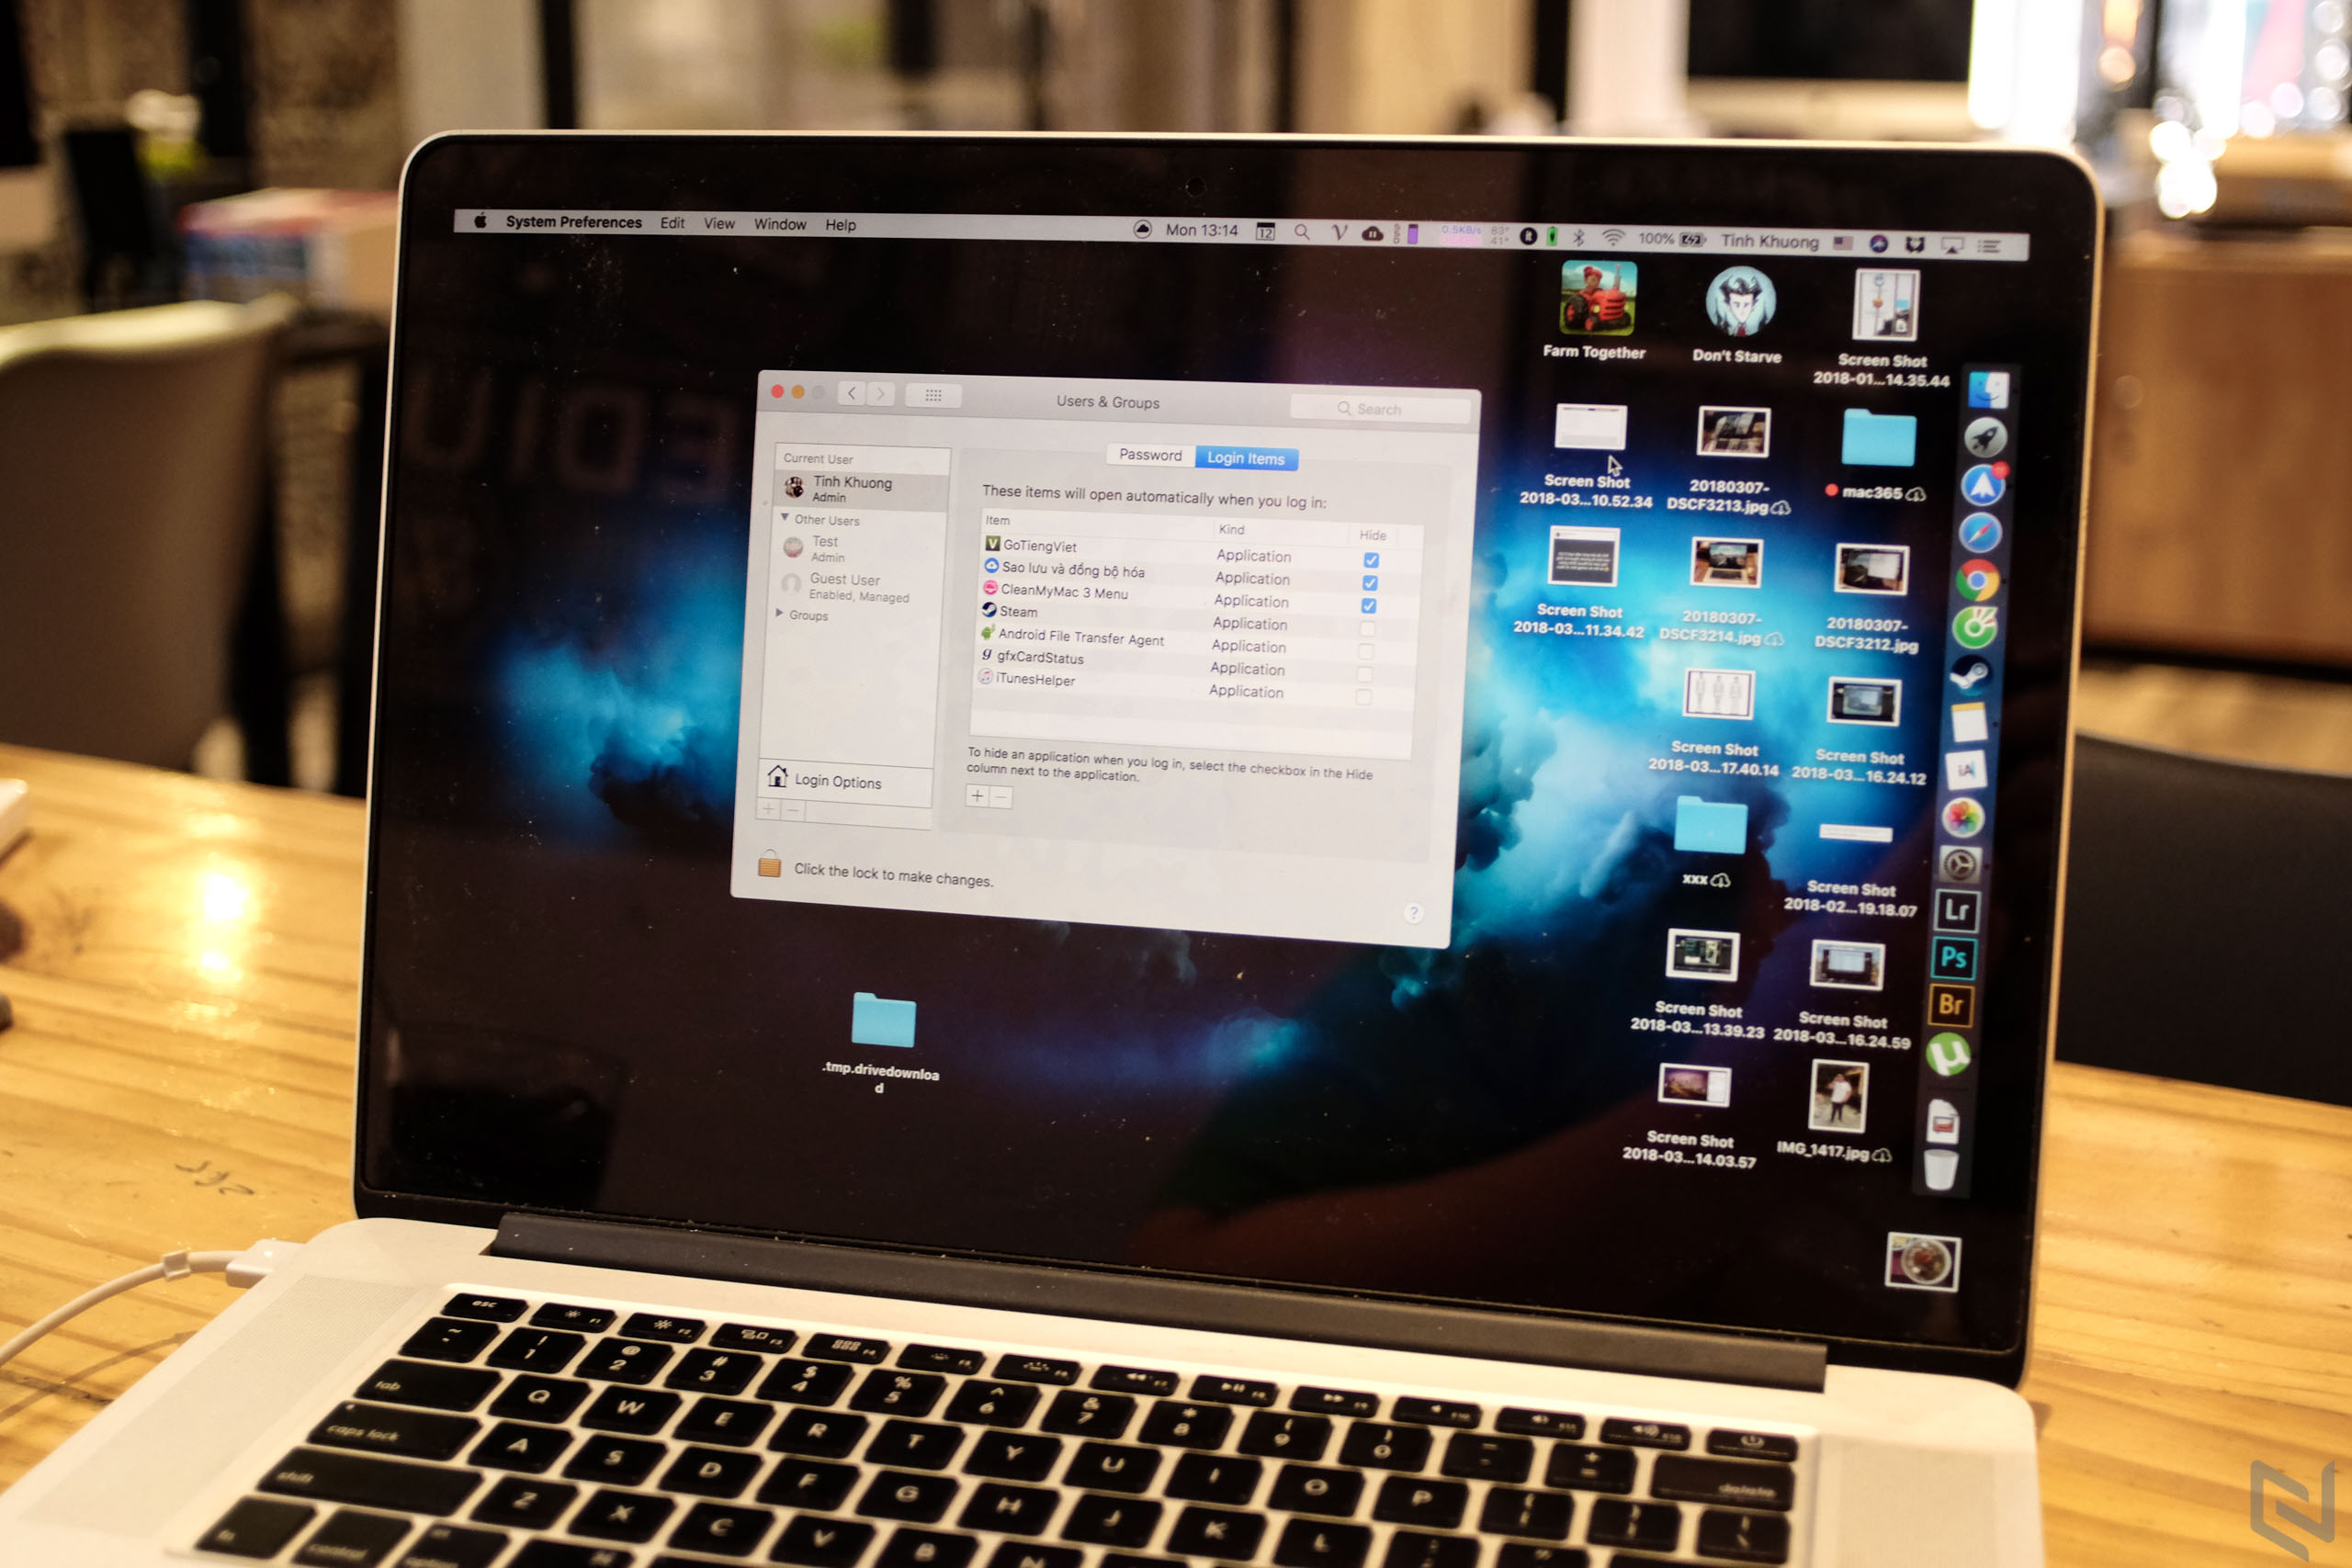 Làm quen Mac - Tắt, tạm hoãn bớt các ứng dụng chạy nền khi vừa mở máy Mac